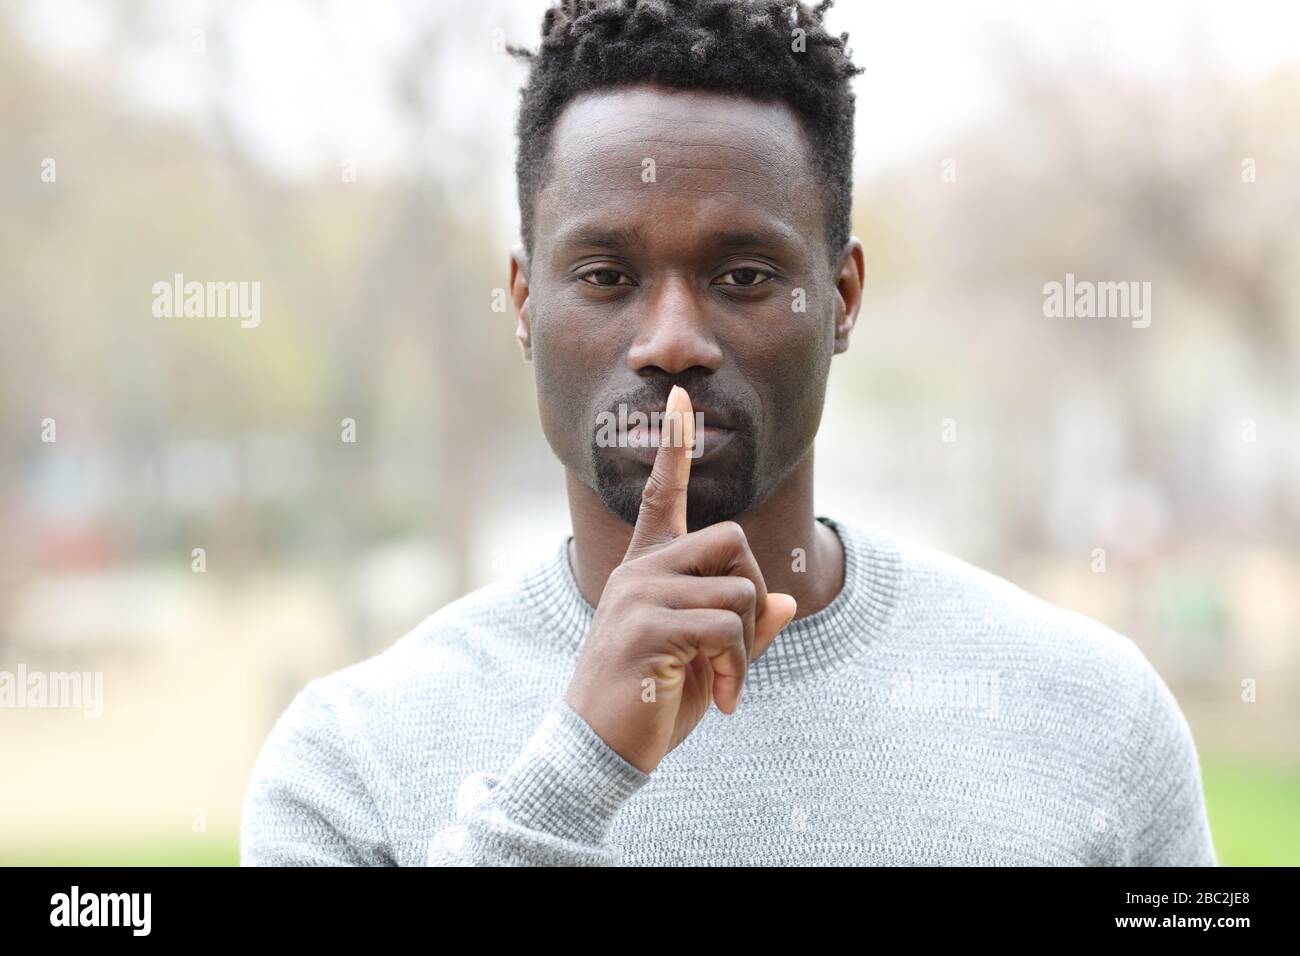 Vista frontale ritratto di un uomo nero che chiede silenzio con un dito sulle labbra in piedi in un parco Foto Stock